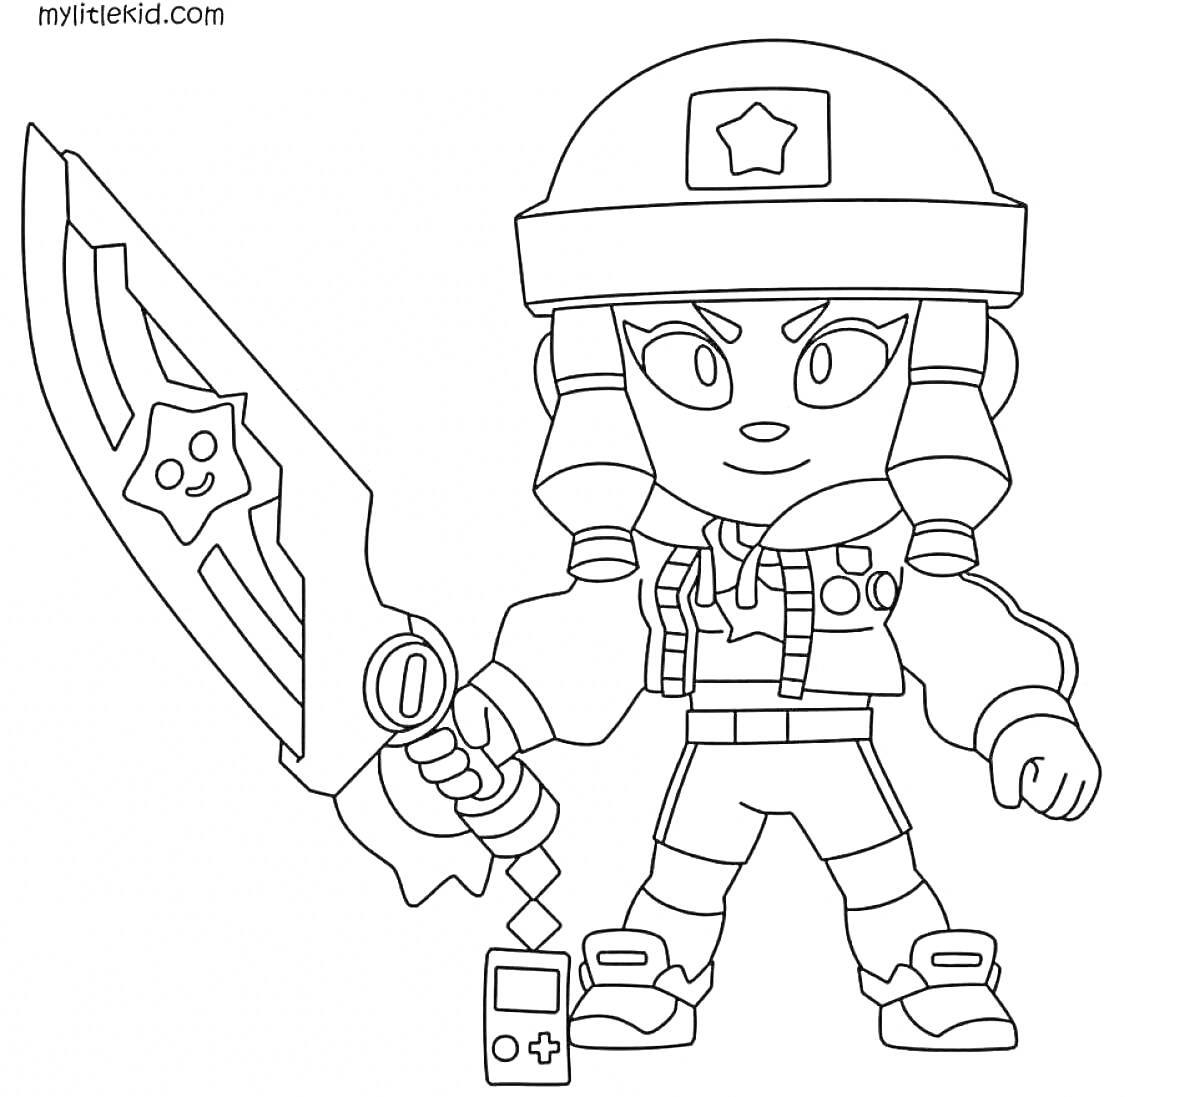 Раскраска Персонаж из Brawl Stars в защитной шлеме с большим мечом и маленьким устройством в руках